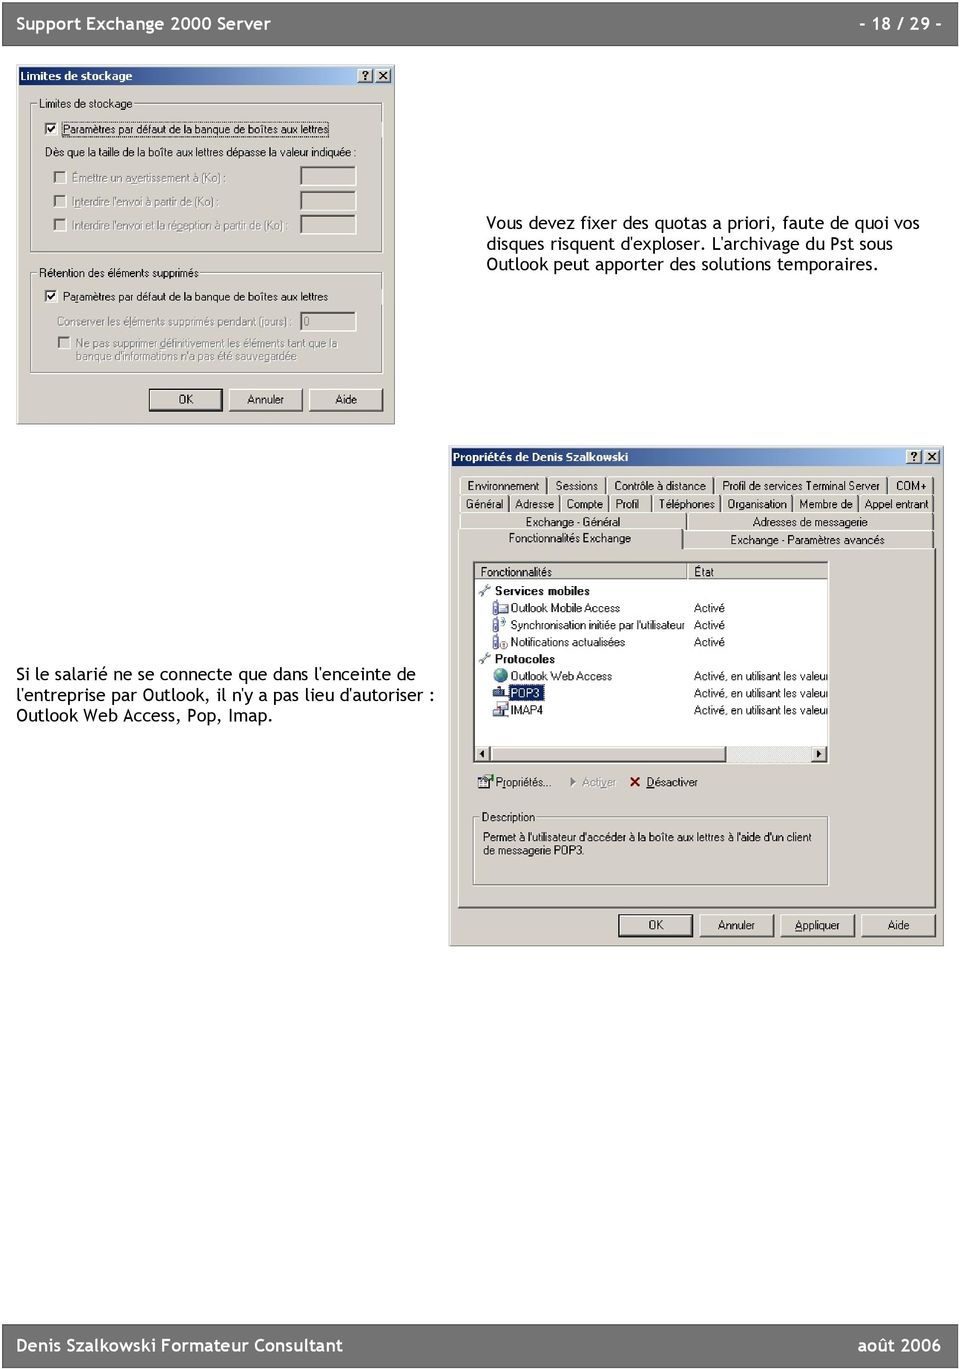 L'archivage du Pst sous Outlook peut apporter des solutions temporaires.